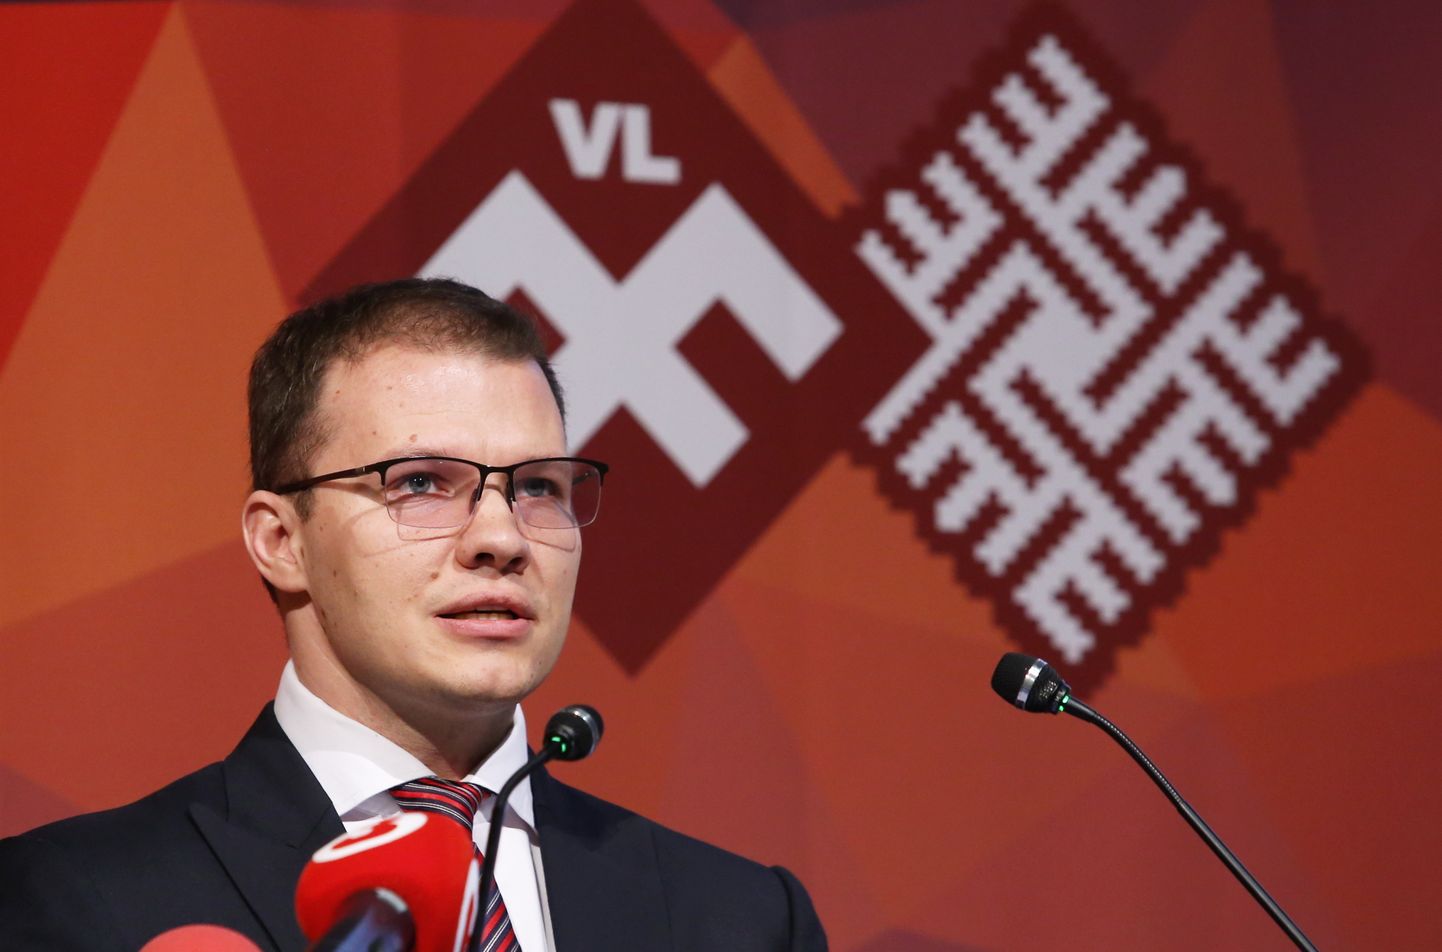 Nacionālās apvienības "Visu Latvijai!"-"Tēvzemei un Brīvībai/LNNK" Saeimas frakcijas priekšsēdētājs Raivis Dzintars piedalās Nacionālās apvienības "Visu Latvijai!"-"Tēvzemei un Brīvībai/LNNK" kongresā, kurā tiek ievēlēts partijas priekšsēdētājs, valde un ētikas komisija.